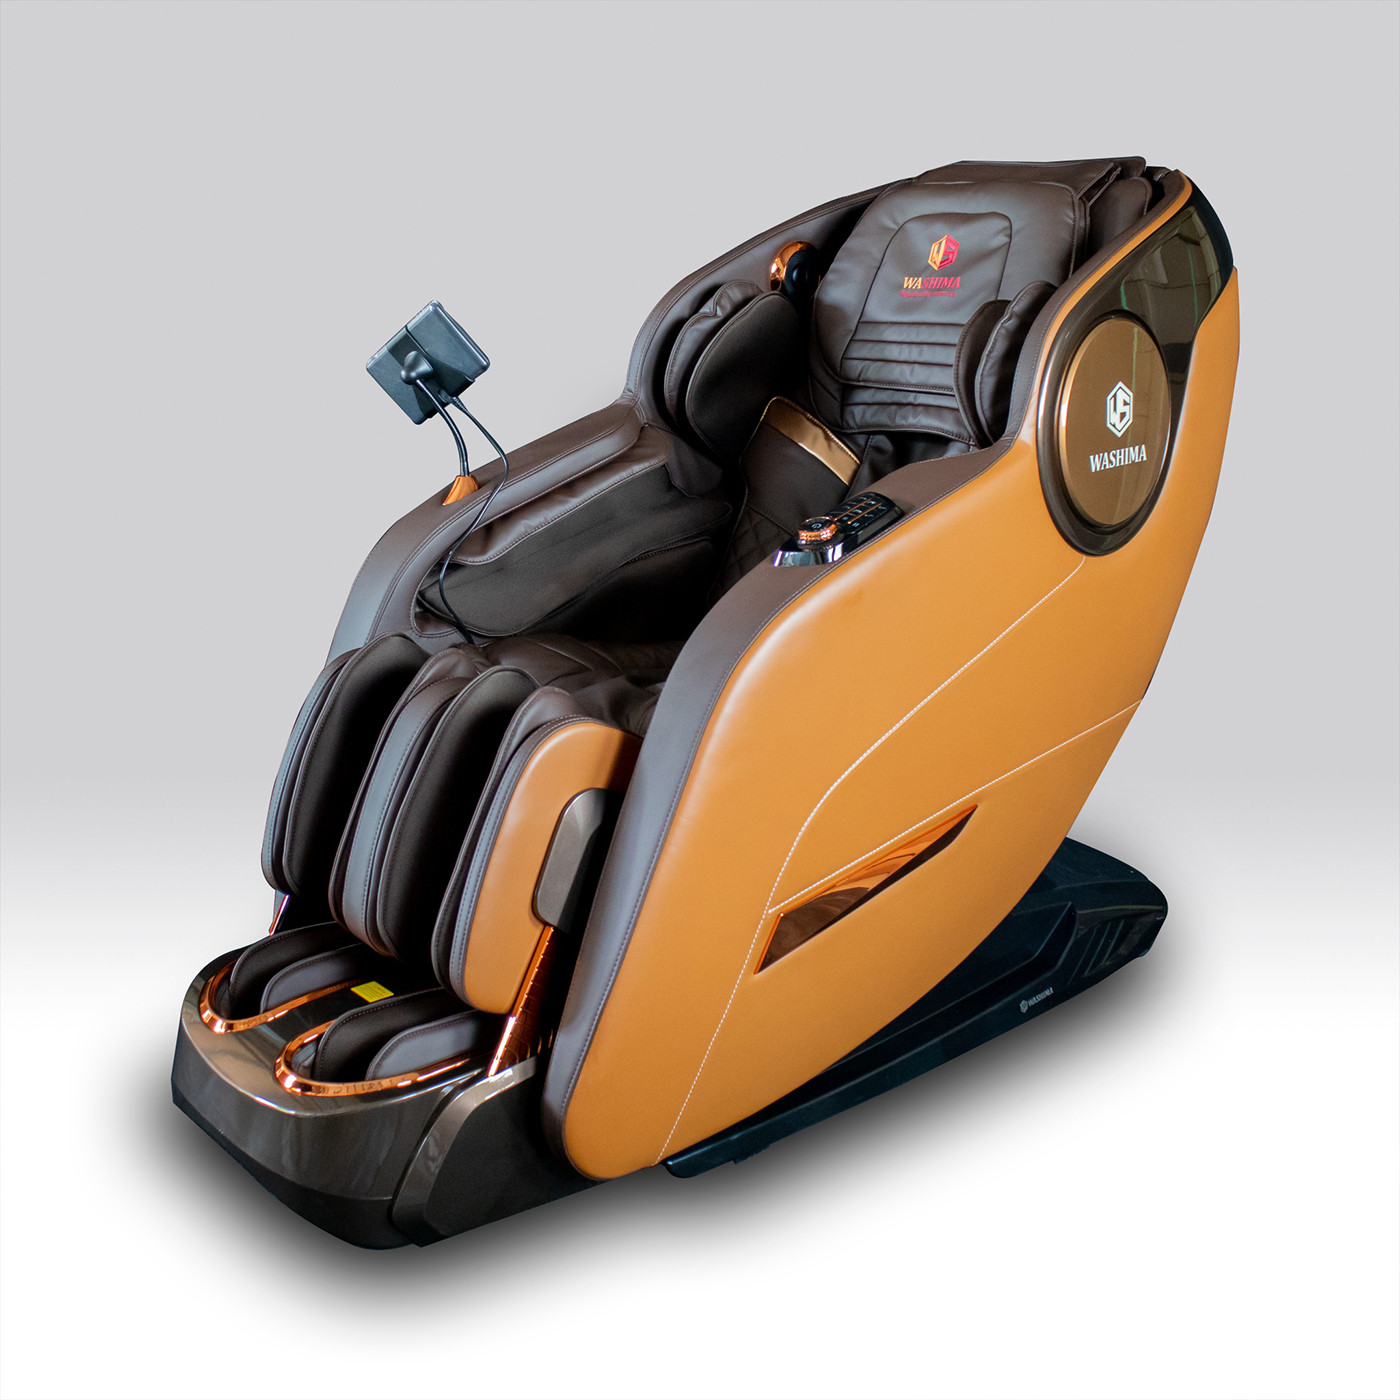 WA-666 dòng ghế massage hiện đại, tích hợp nhiều công nghệ vượt trội